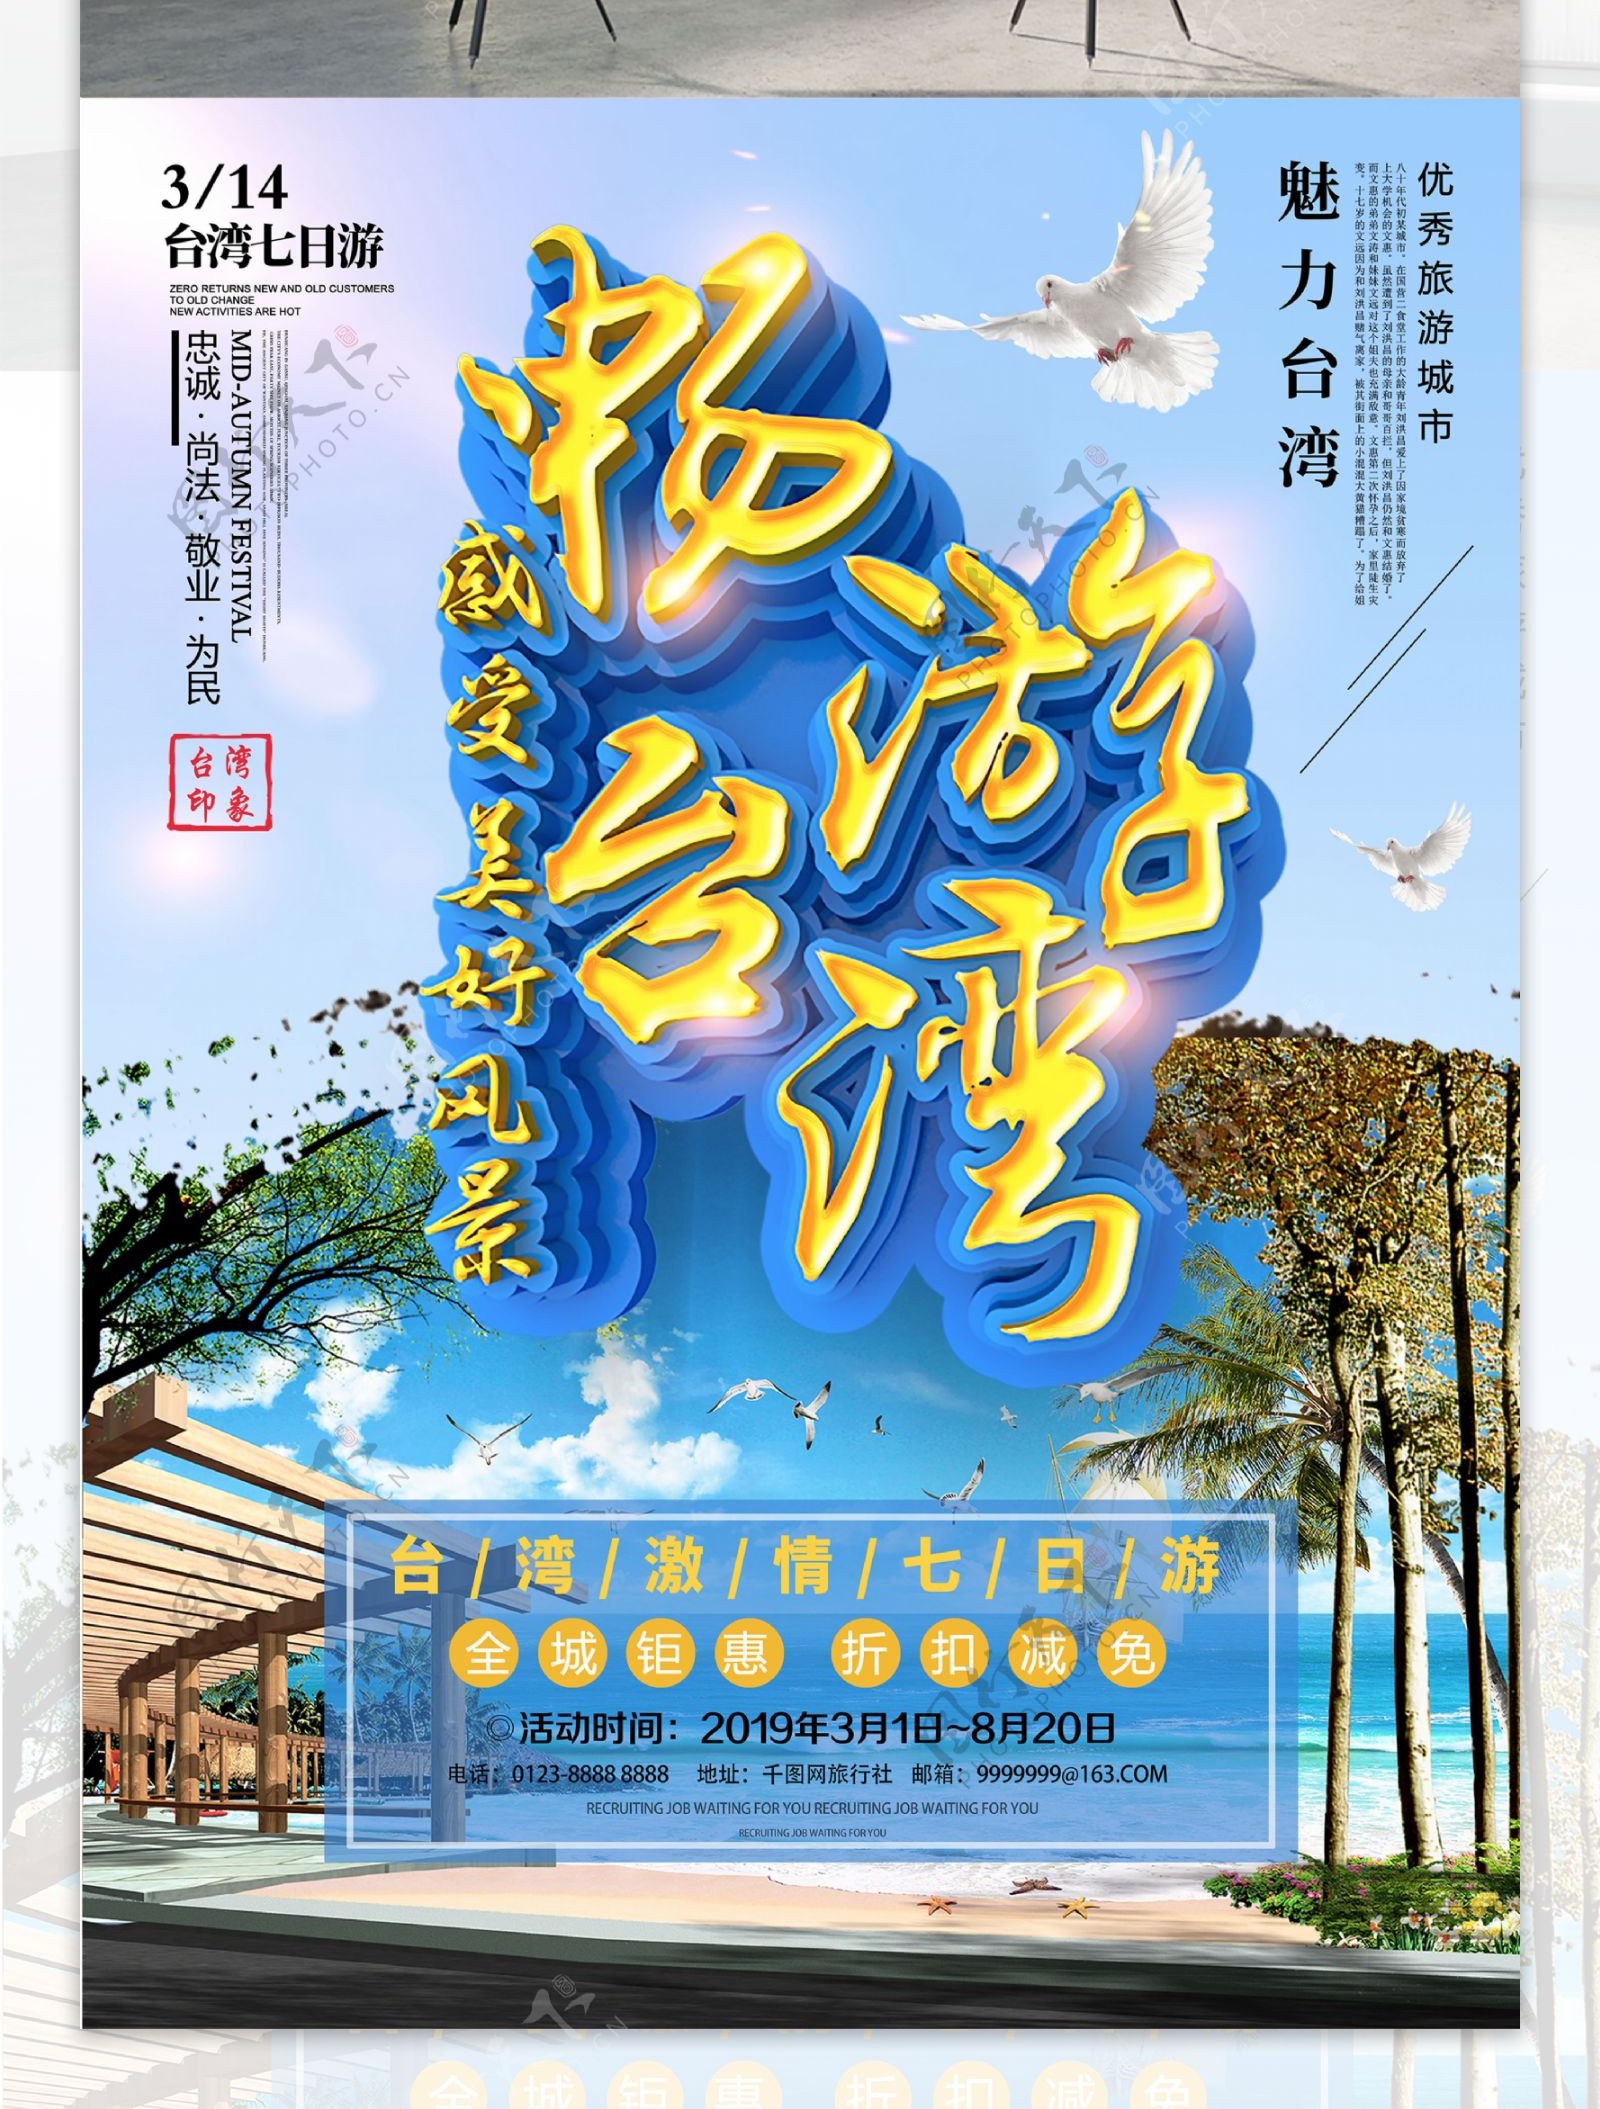 C4D简约清新台湾风光台湾旅游宣传海报